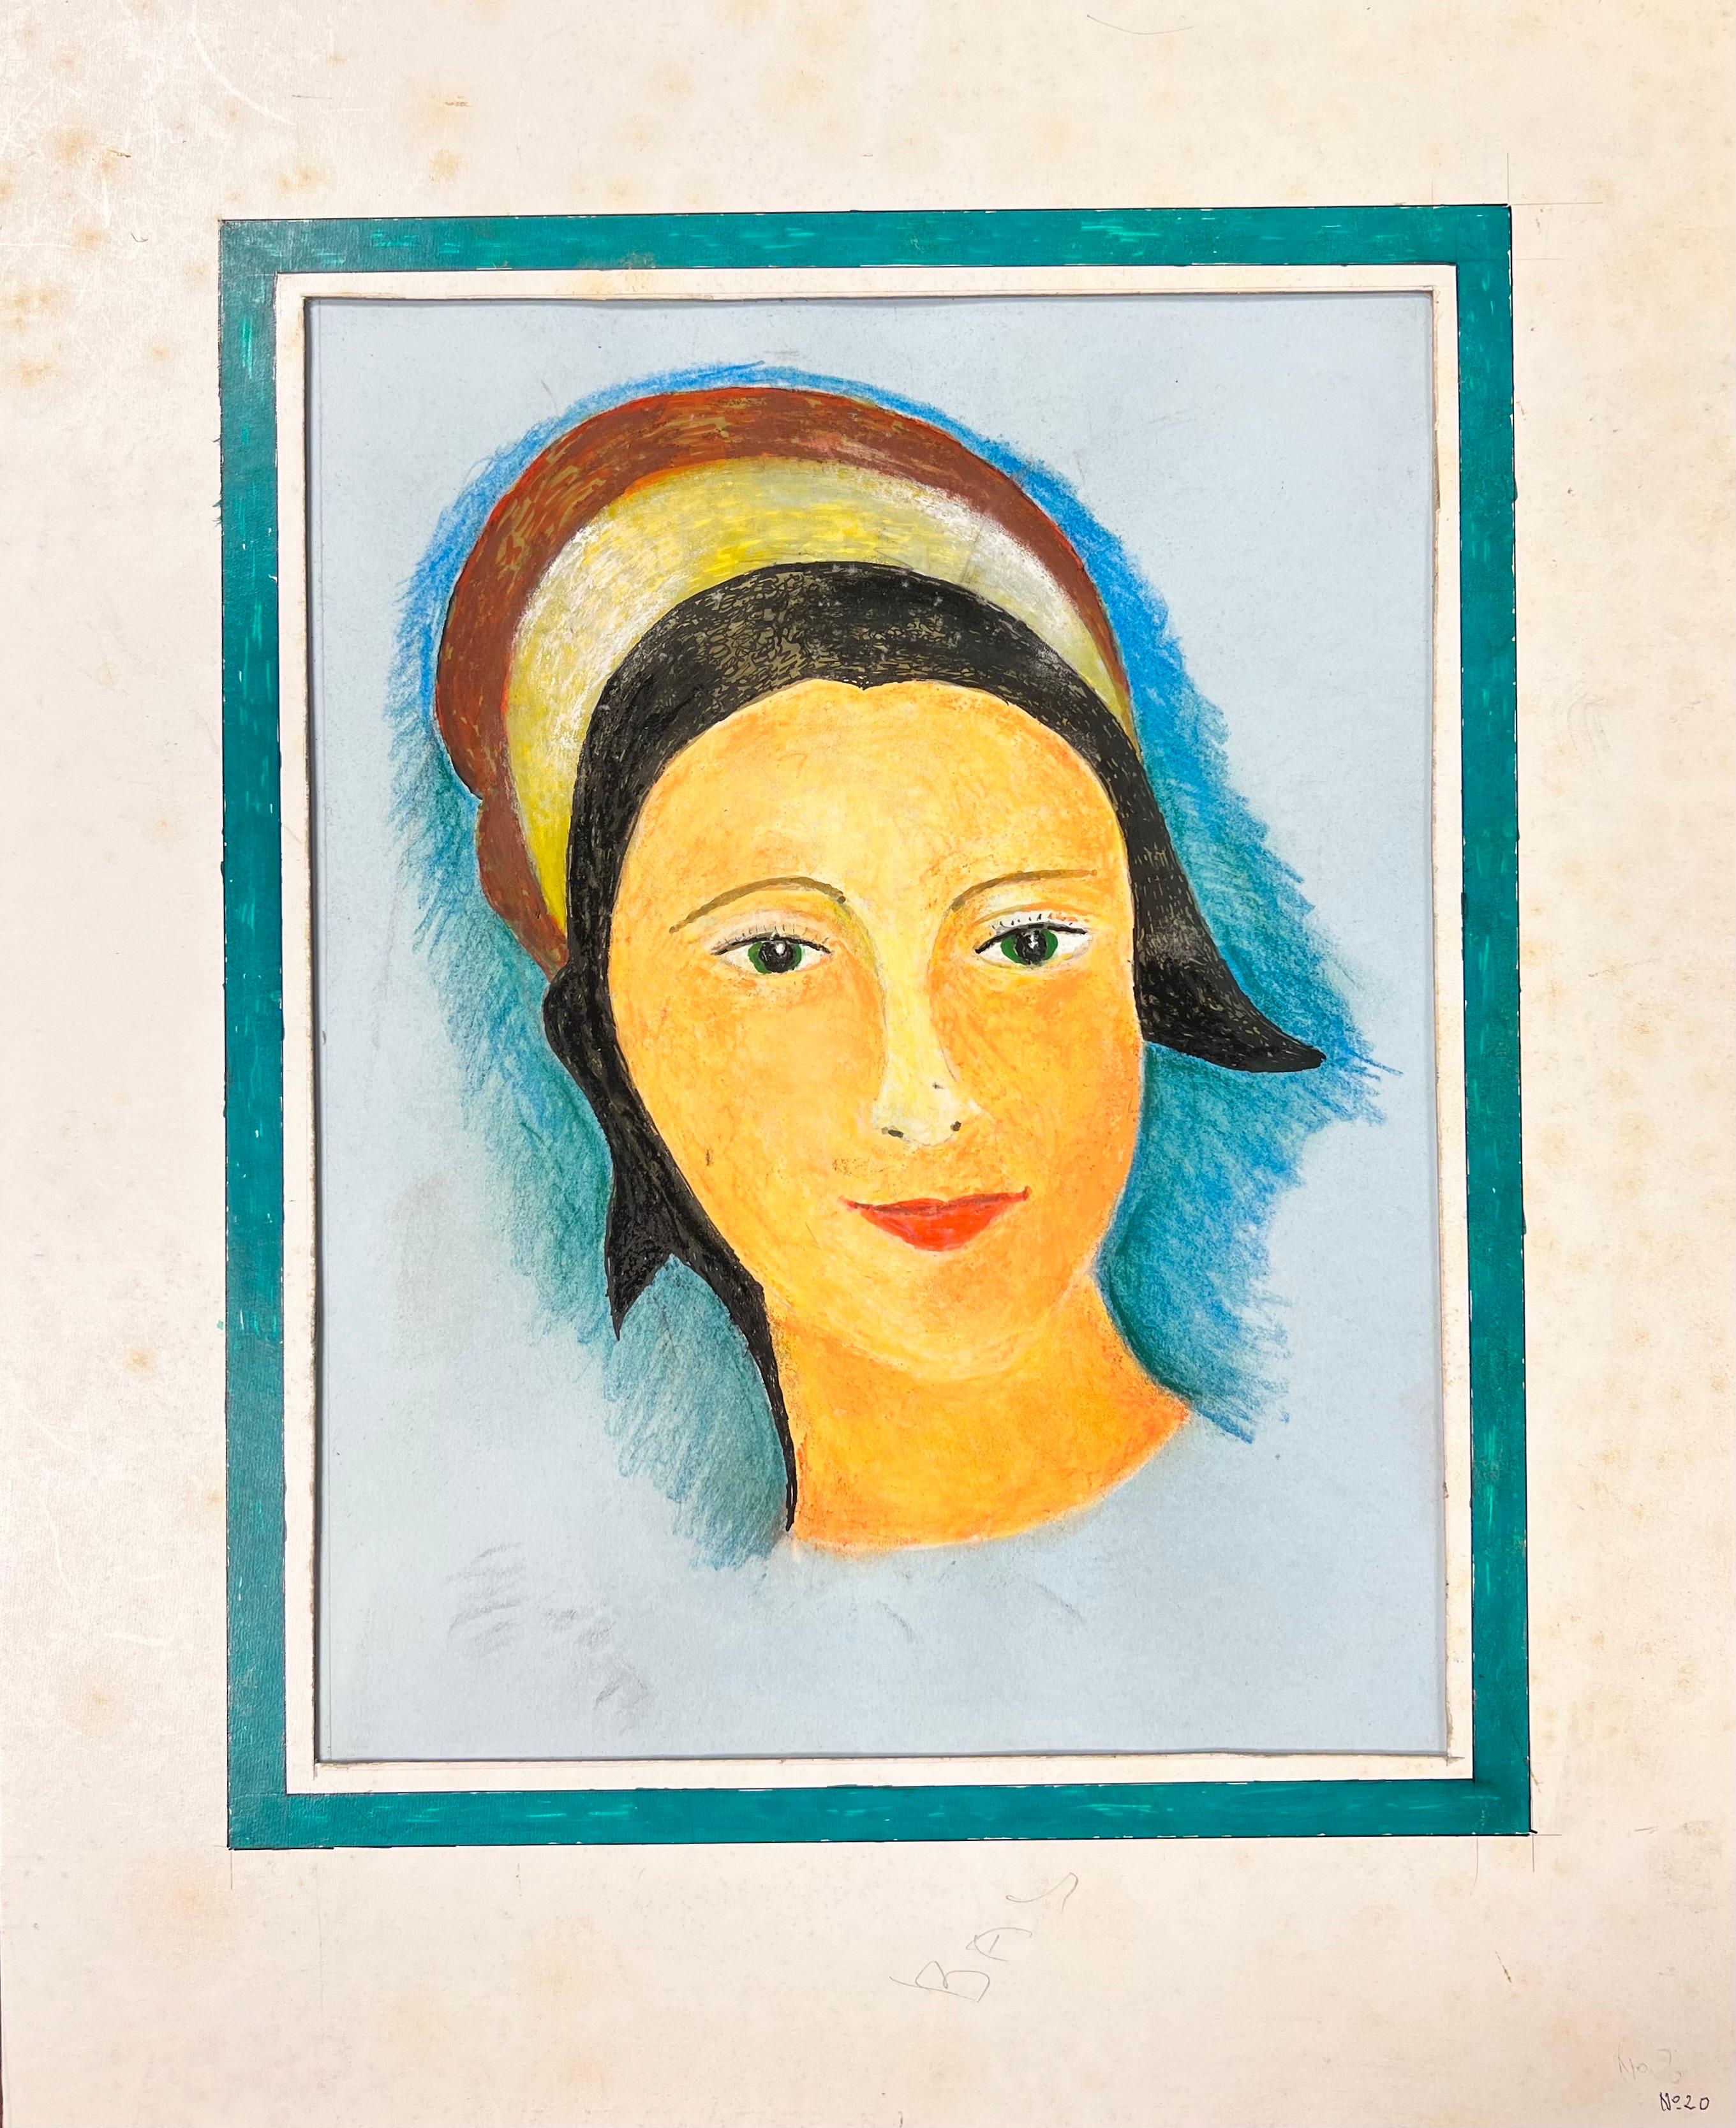 Figurative Art Bernard Labbe - Peinture moderniste/ cubiste des années 1950 - Portrait d'une jeune fille aux yeux verts